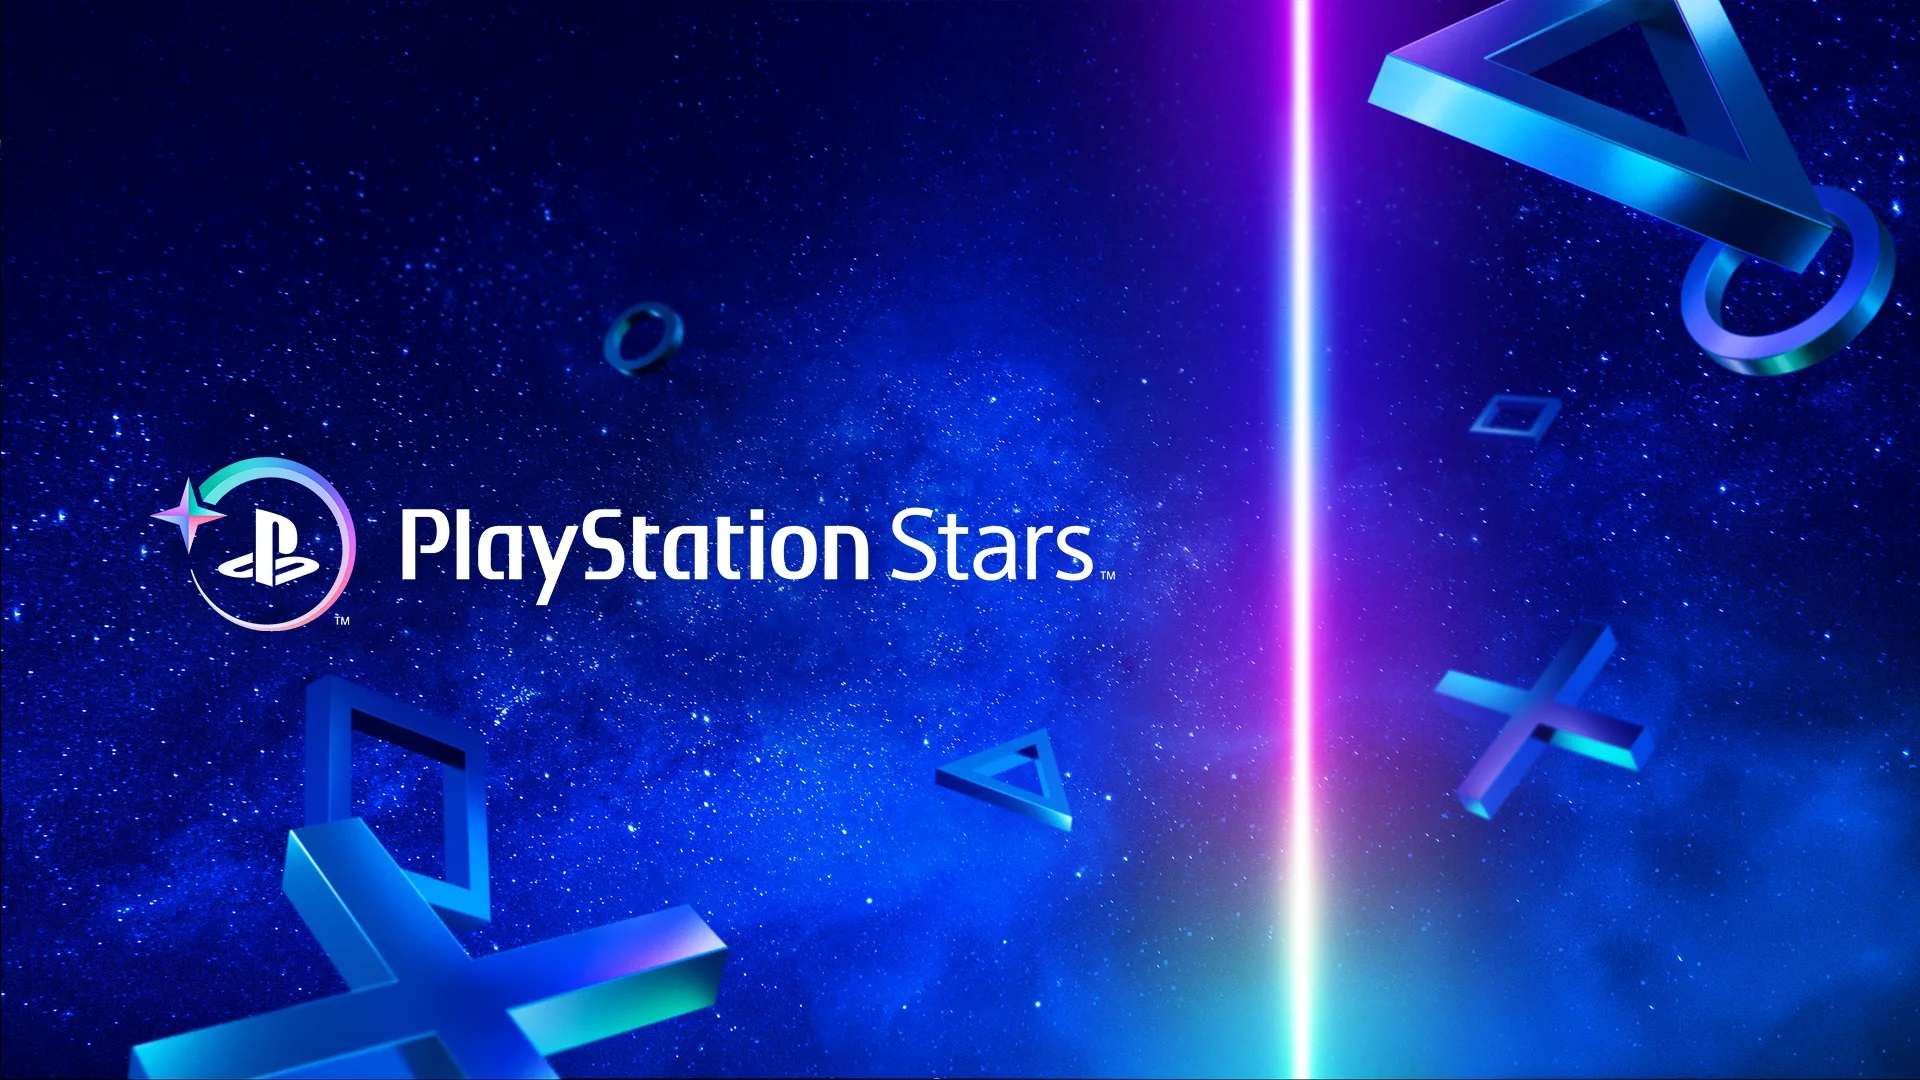   PlayStation Stars    ,       